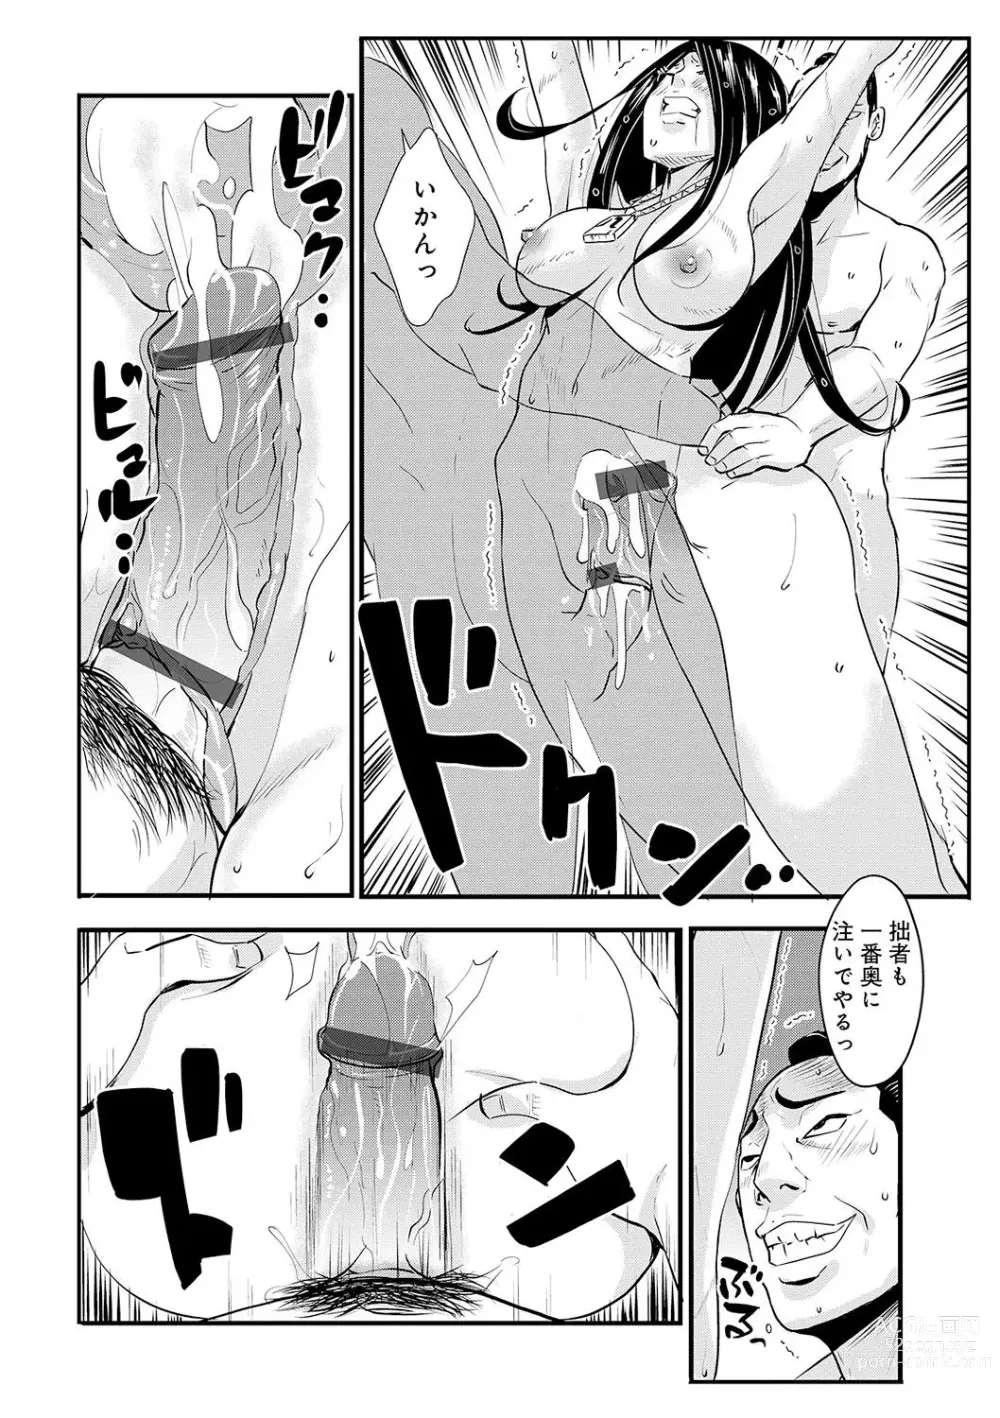 Page 18 of manga Harami samurai 09 ~Sekisho de Toraerare Goumon no Semeku~